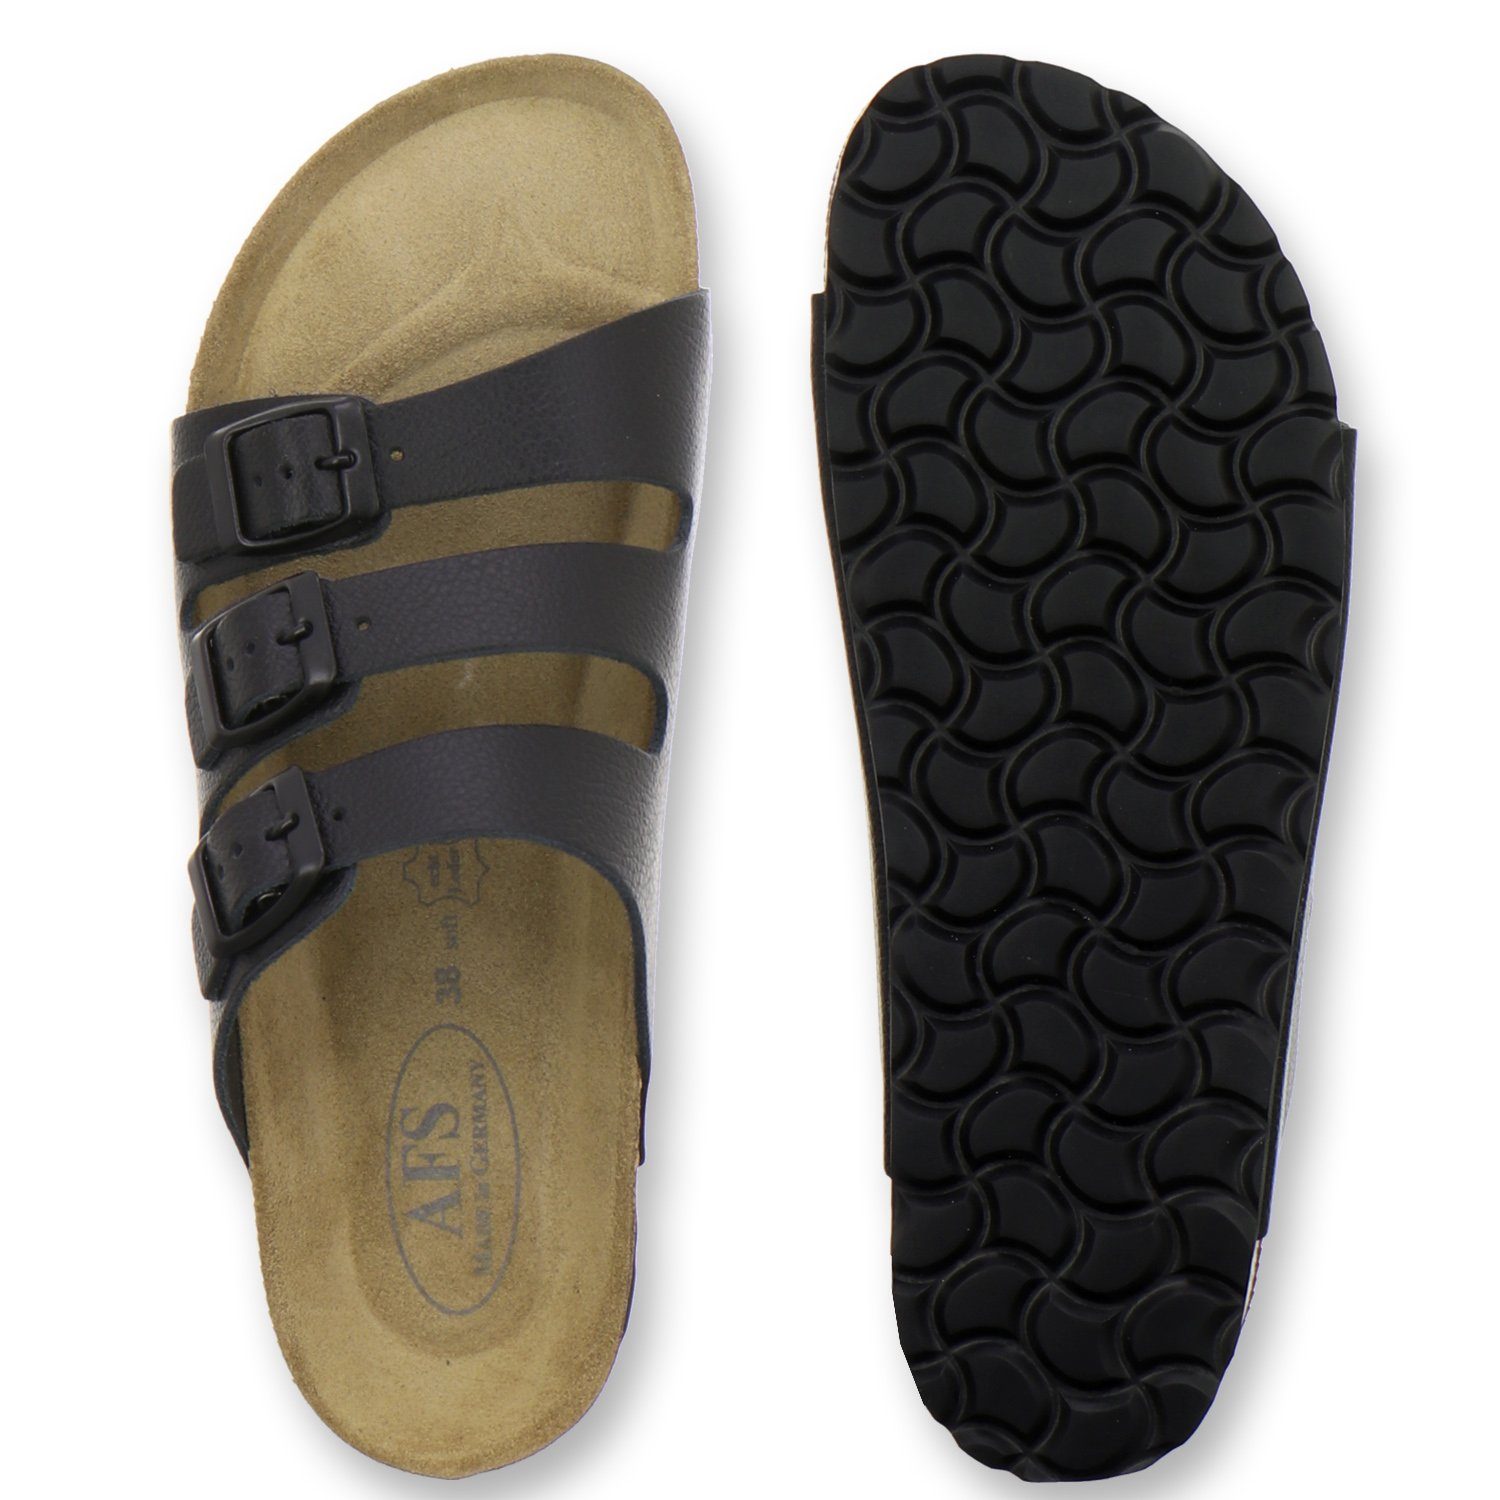 AFS-Schuhe 2133 schwarz Germany in mit aus Pantolette Made Fußbett, Leder Glattleder Damen für